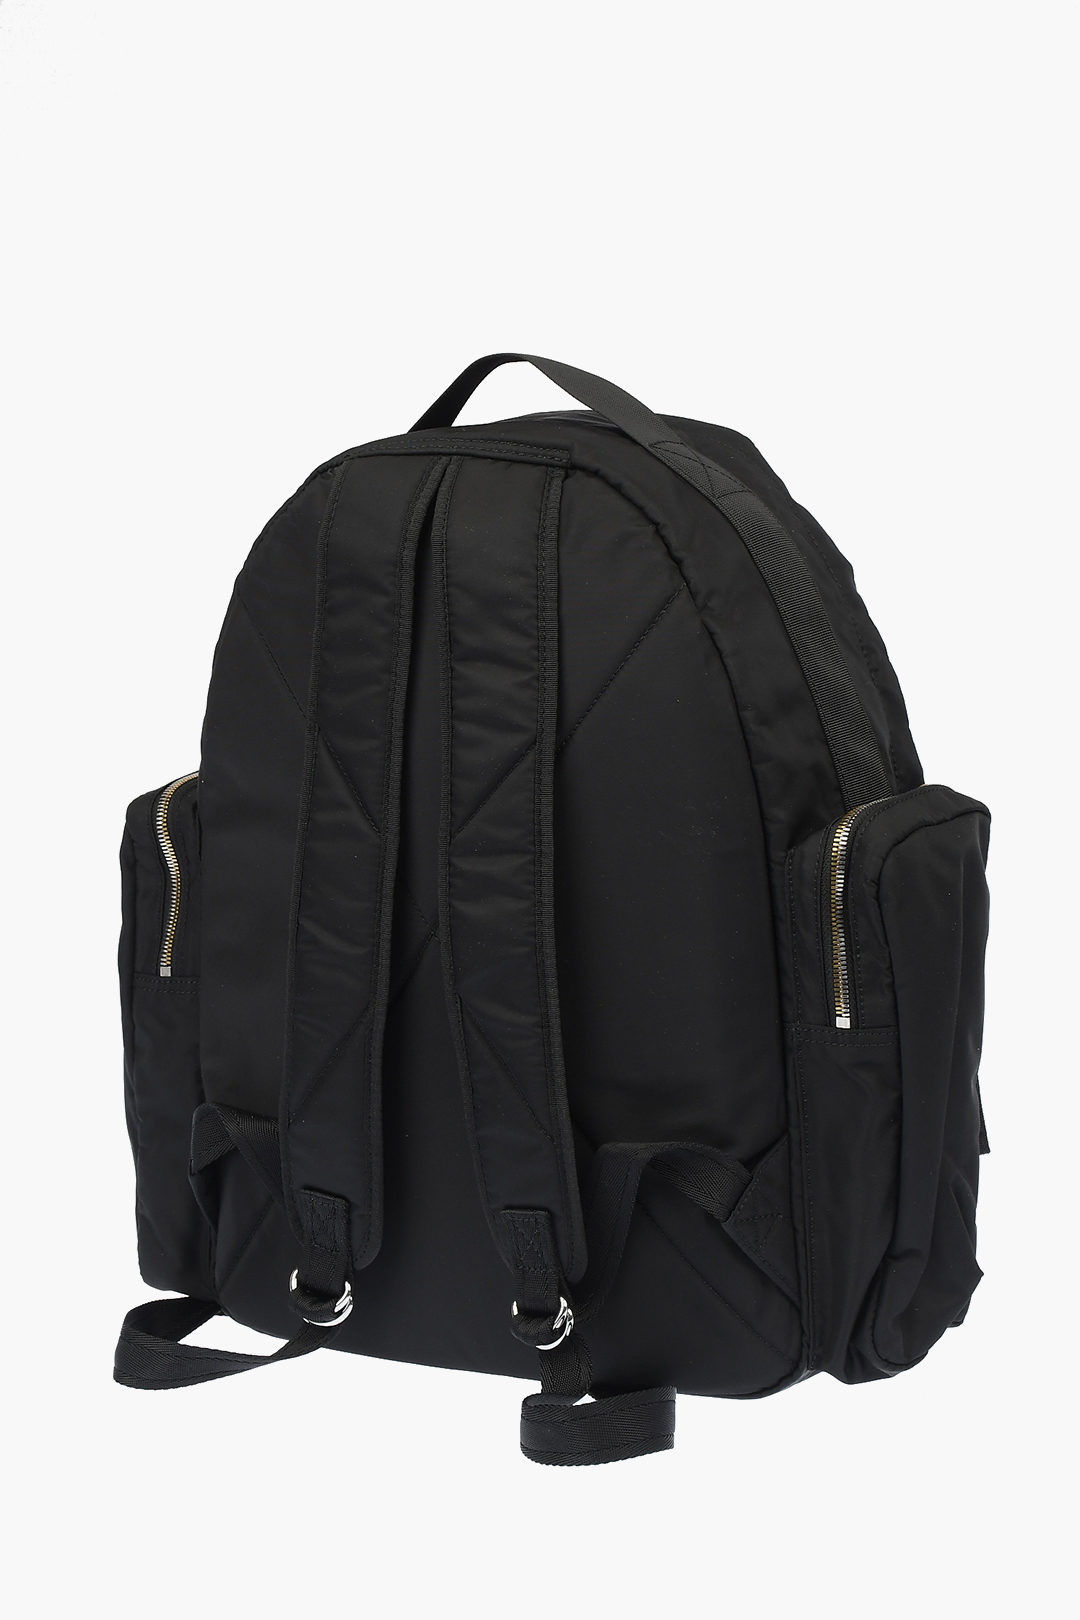 Diesel side pockets BISIE backpack with zip closure men - Glamood